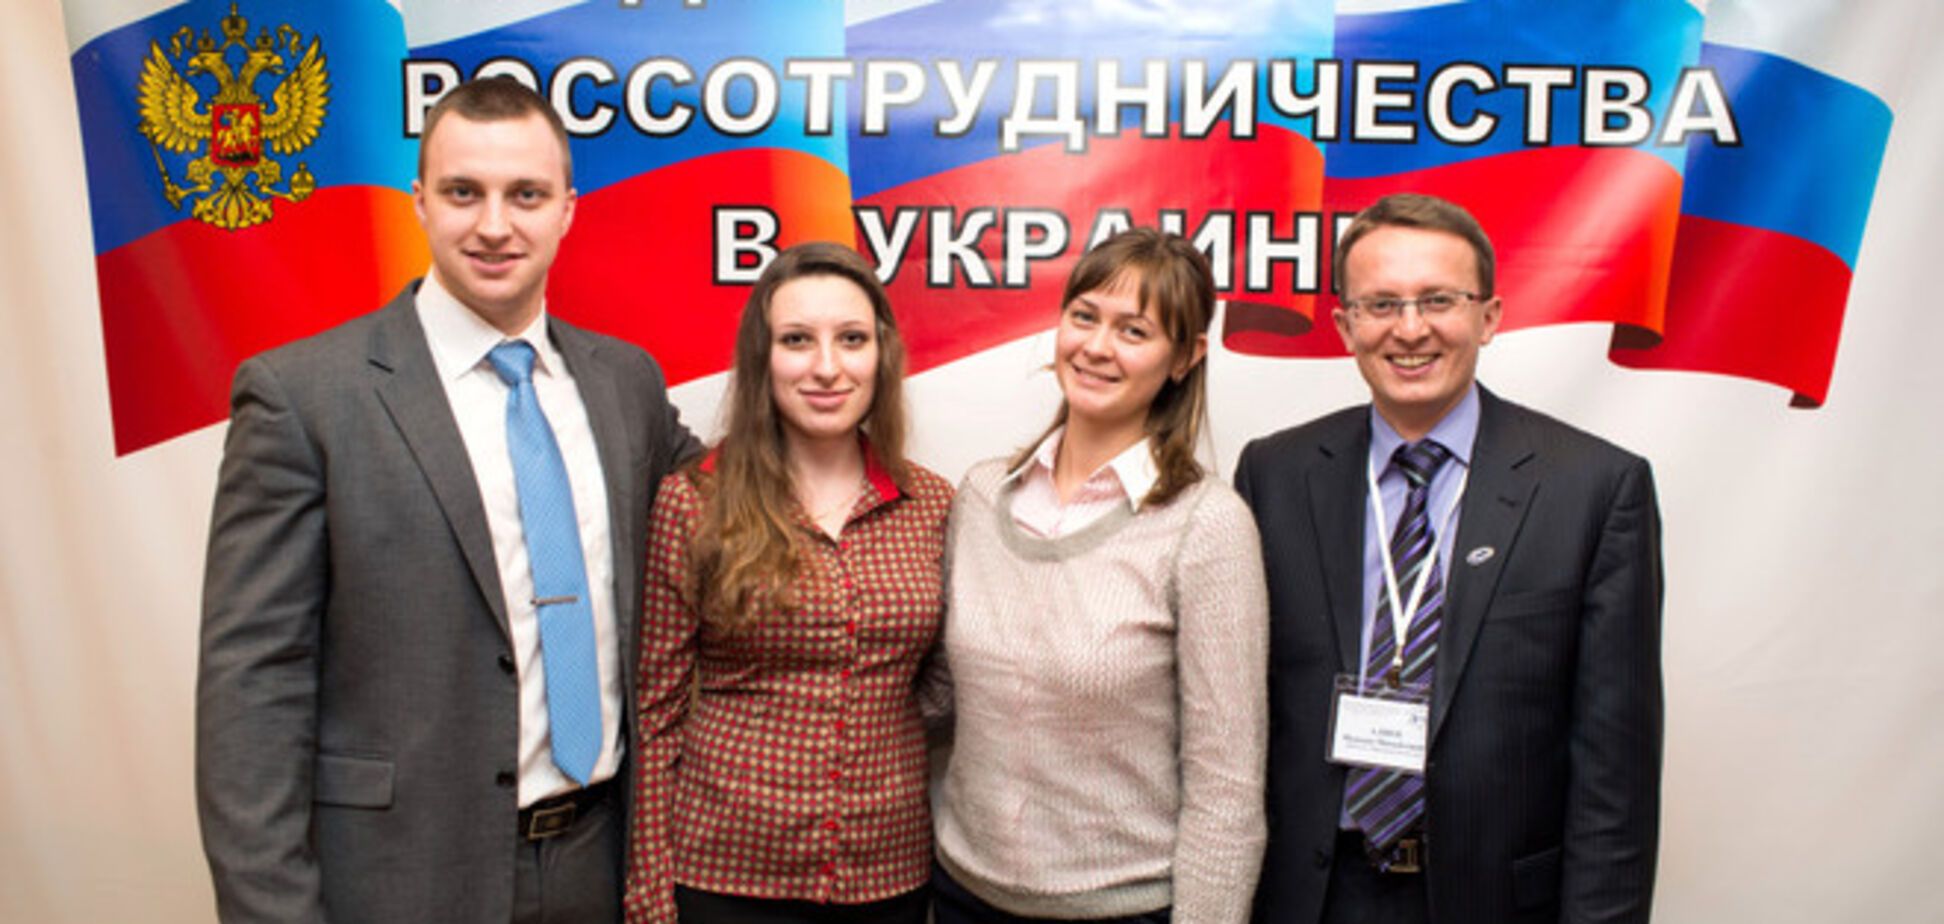 В киевском вузе СБУ выявила и закрыла российский пропагандистский центр